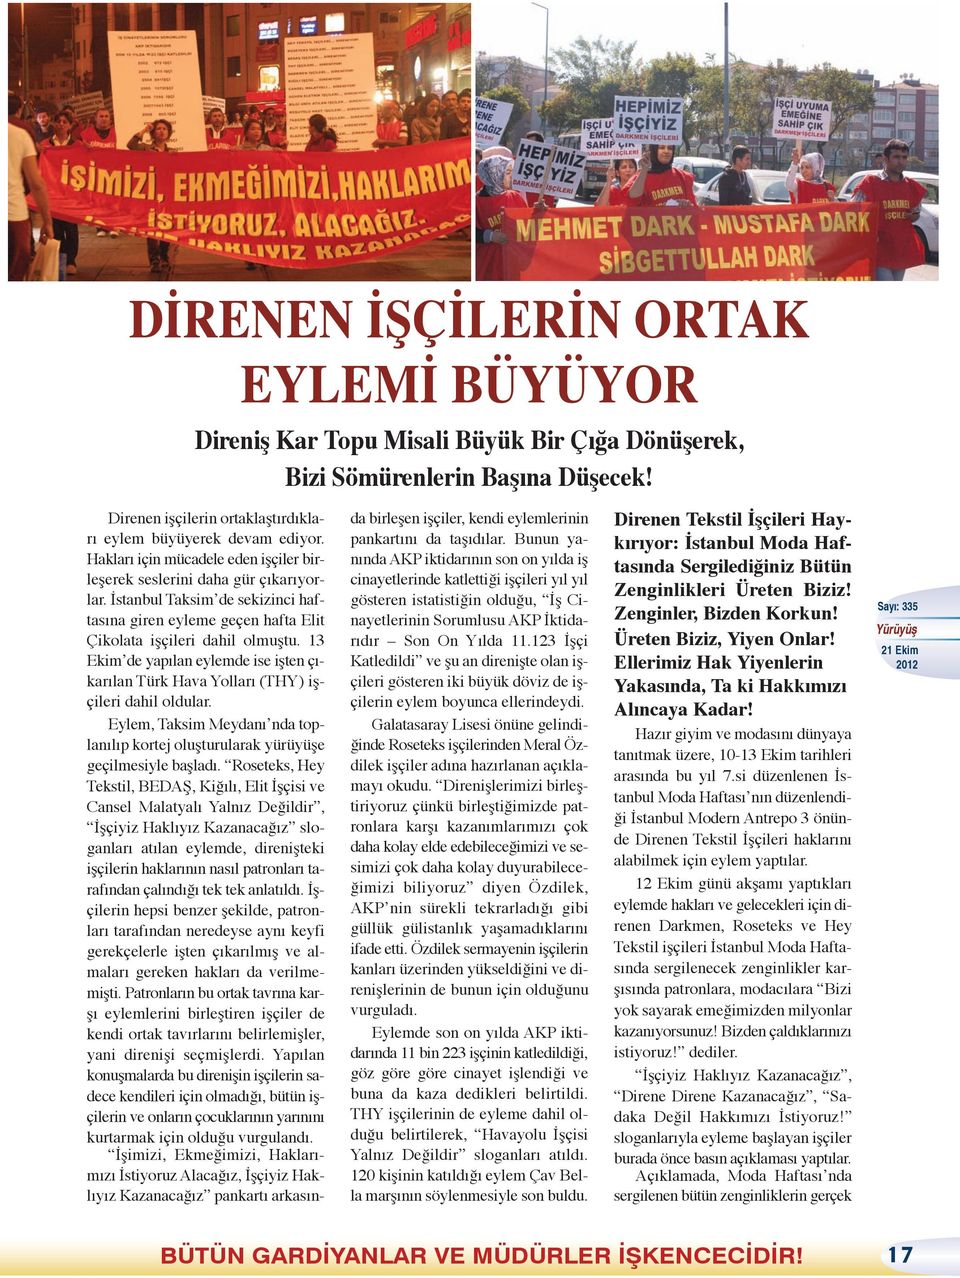 13 Ekim de yapılan eylemde ise işten çıkarılan Türk Hava Yolları (THY) işçileri dahil oldular. Eylem, Taksim Meydanı nda toplanılıp kortej oluşturularak yürüyüşe geçilmesiyle başladı.